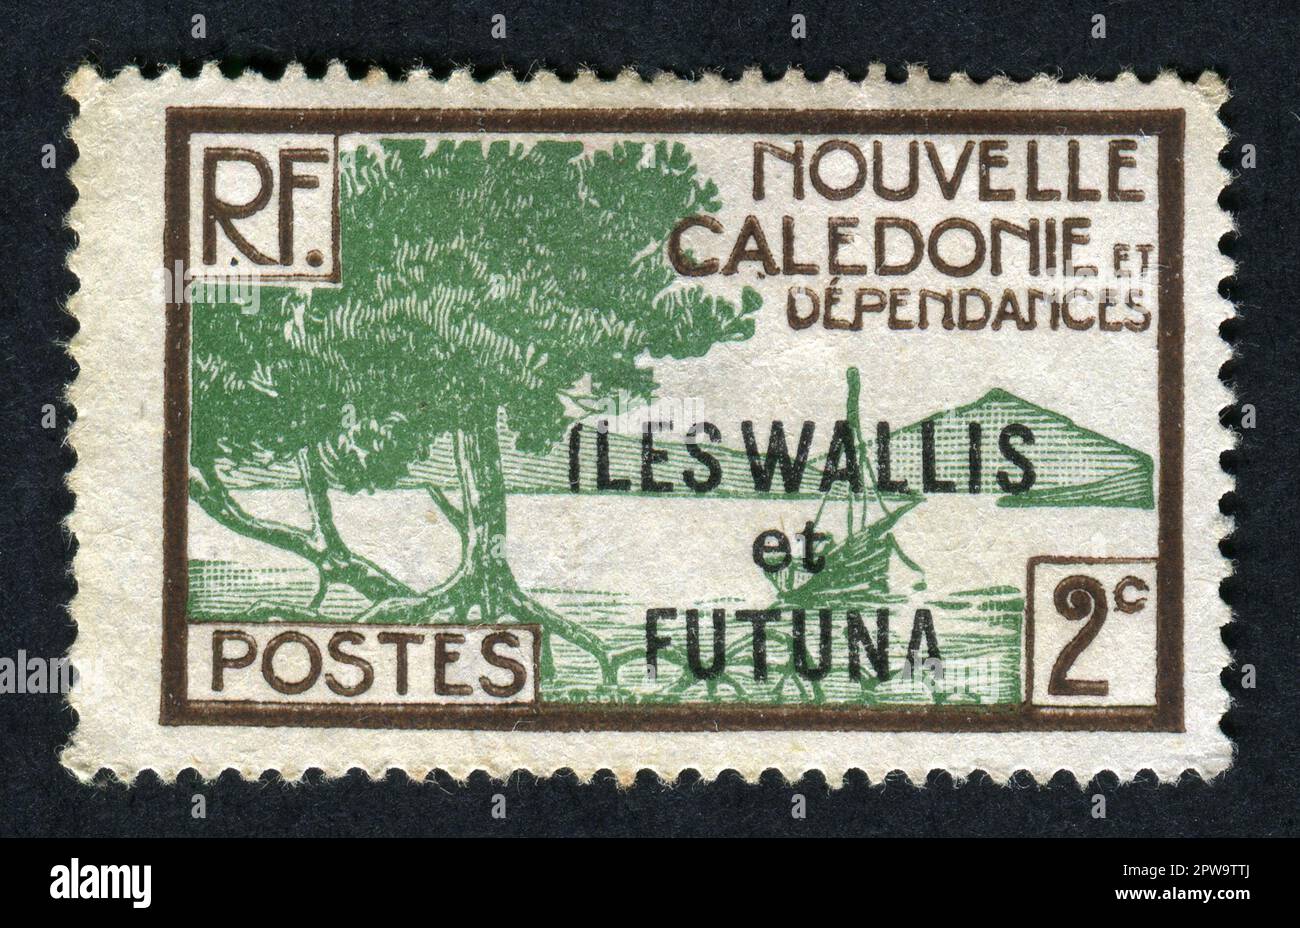 Ca. 1935. Eine Briefmarke von 2 Centimes Wallis und Futuna Islands, ausgestellt zwischen 1930 und 1938. Unter Verwendung eines Stempels von Neukaledonien aus dem Jahr 1928 ist „Iles Wallis et Futuna“ überdruckt. Stockfoto